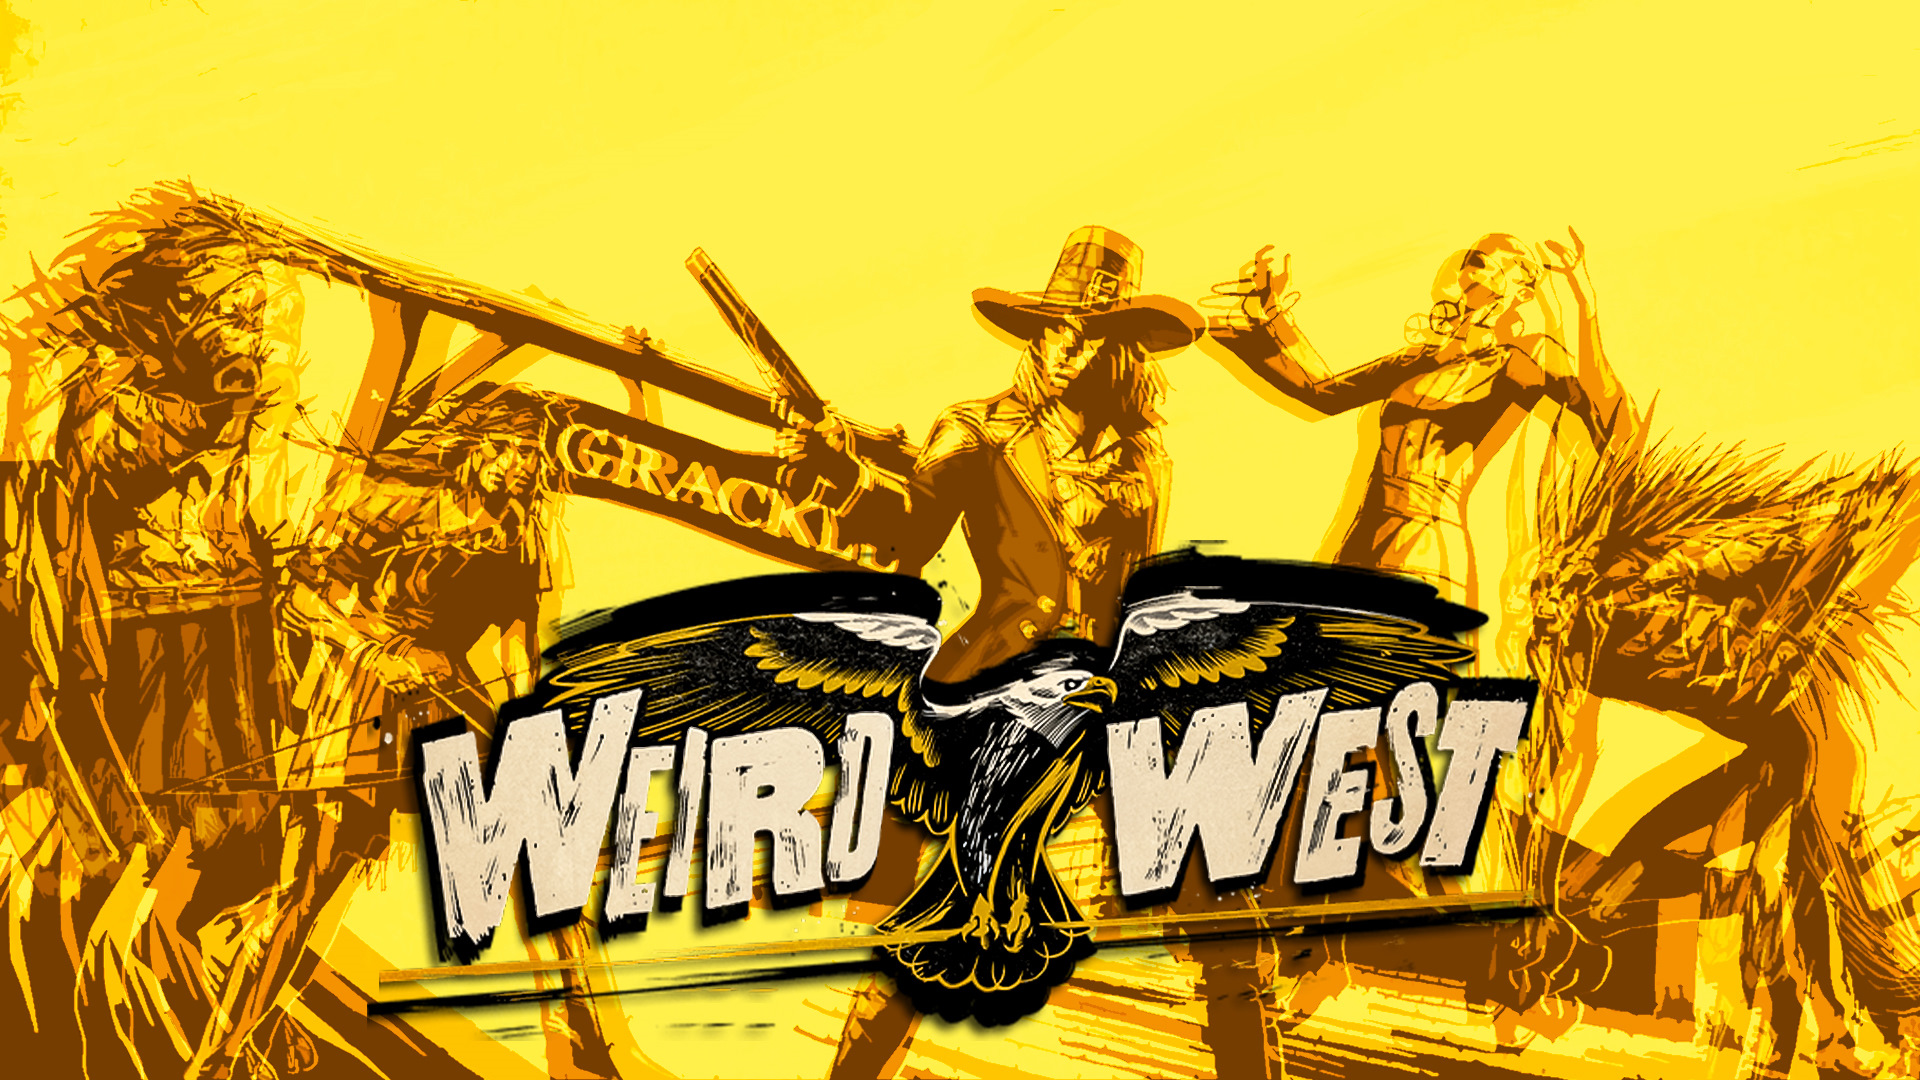 И СНОВА НА ЗАПАДЕ (Стрим) - Weird West #1 - Прохождение